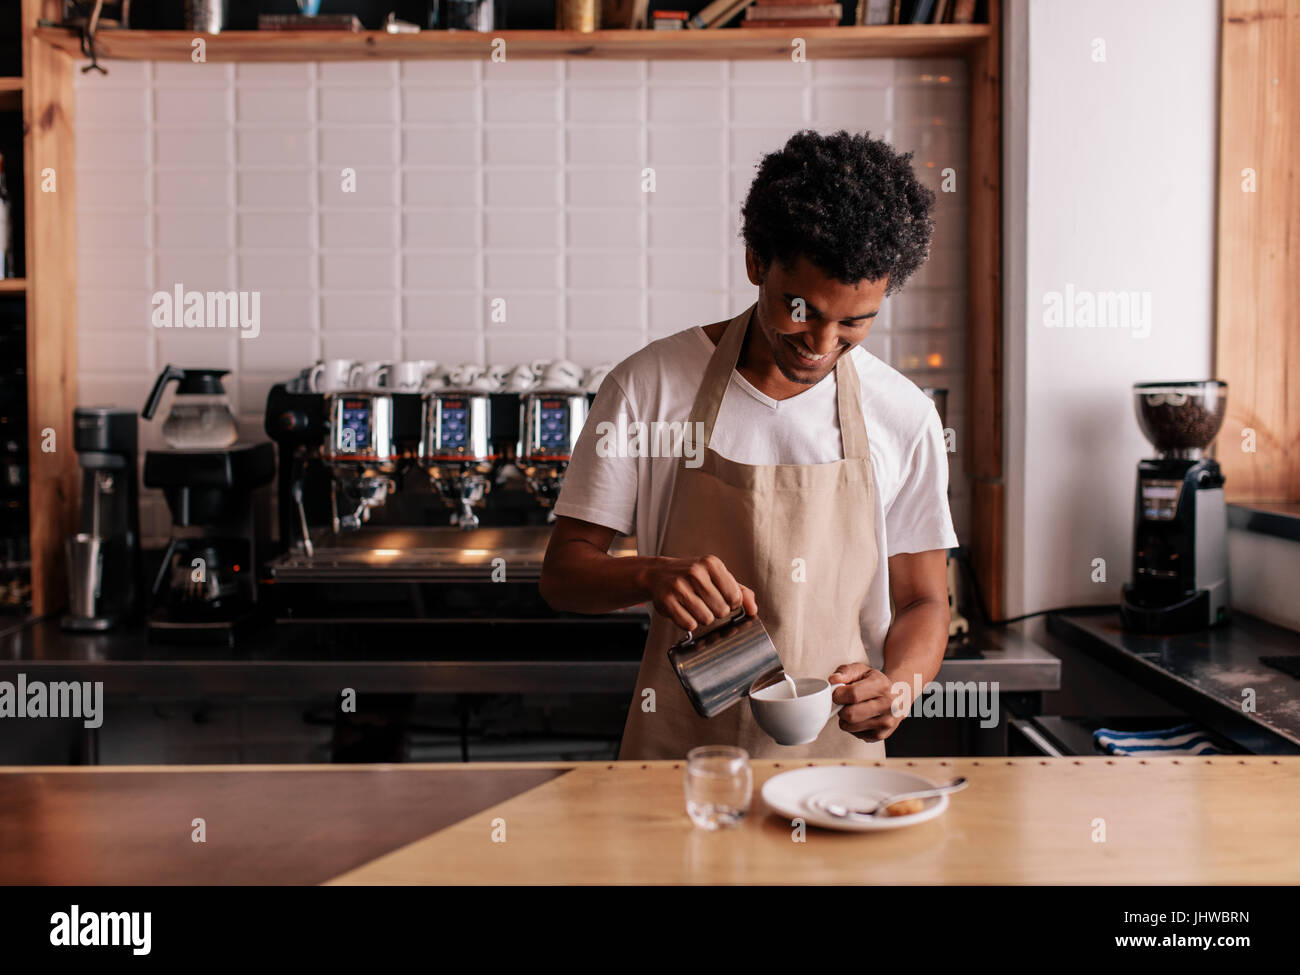 Junge Afrikaner Gießen Milch in Kaffee Espresso. Professionelle Barista Kaffeezubereitung auf Zähler. Stockfoto